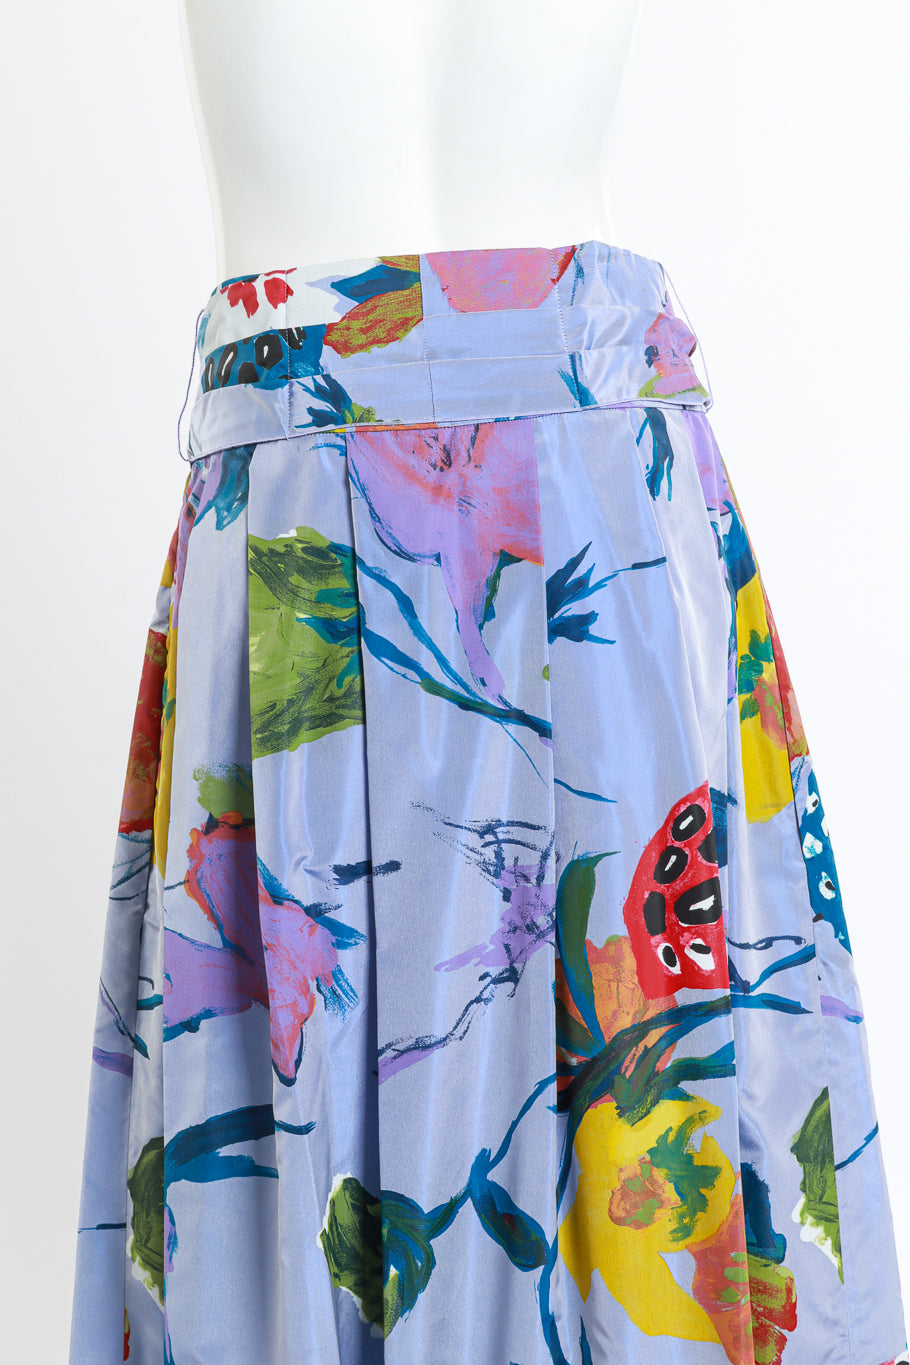 Vintage Christian Lacroix Floral Paint Print Skirt back on mannequin closeup @recess la